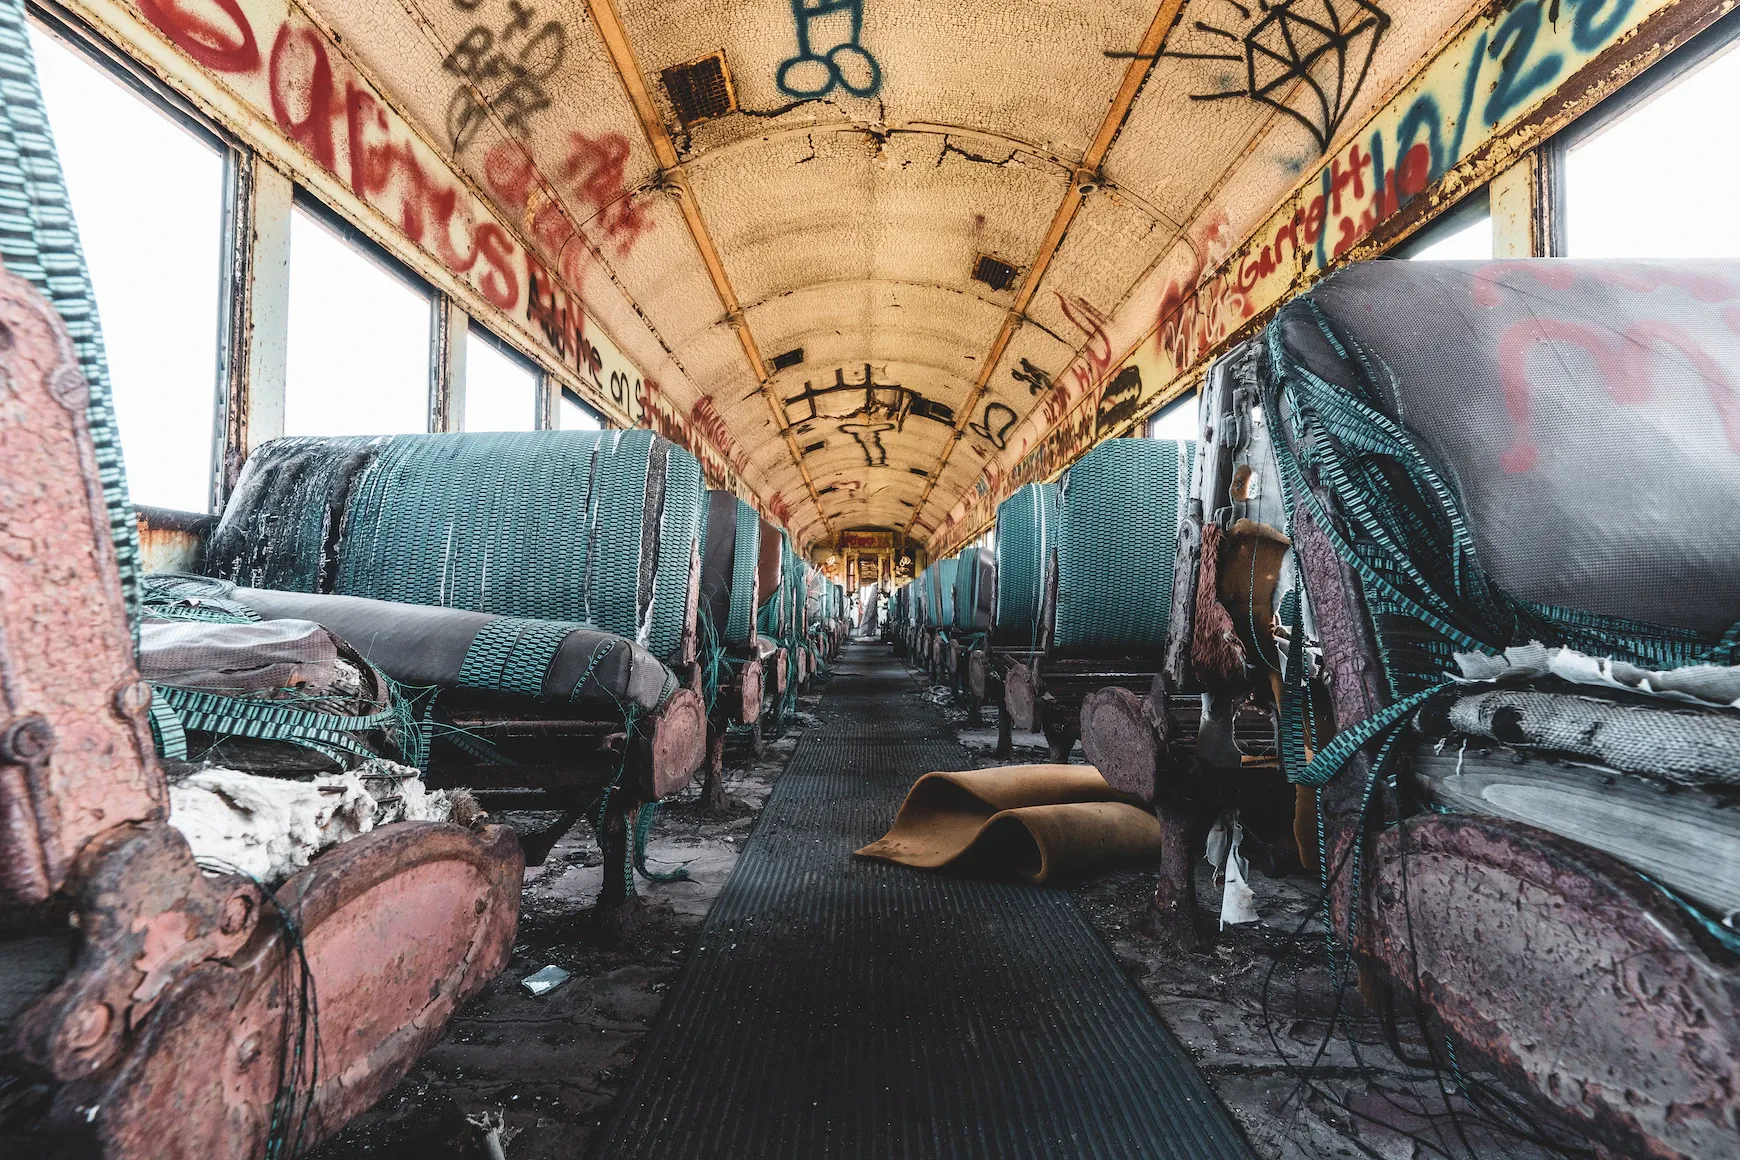 Inside an abandoned train